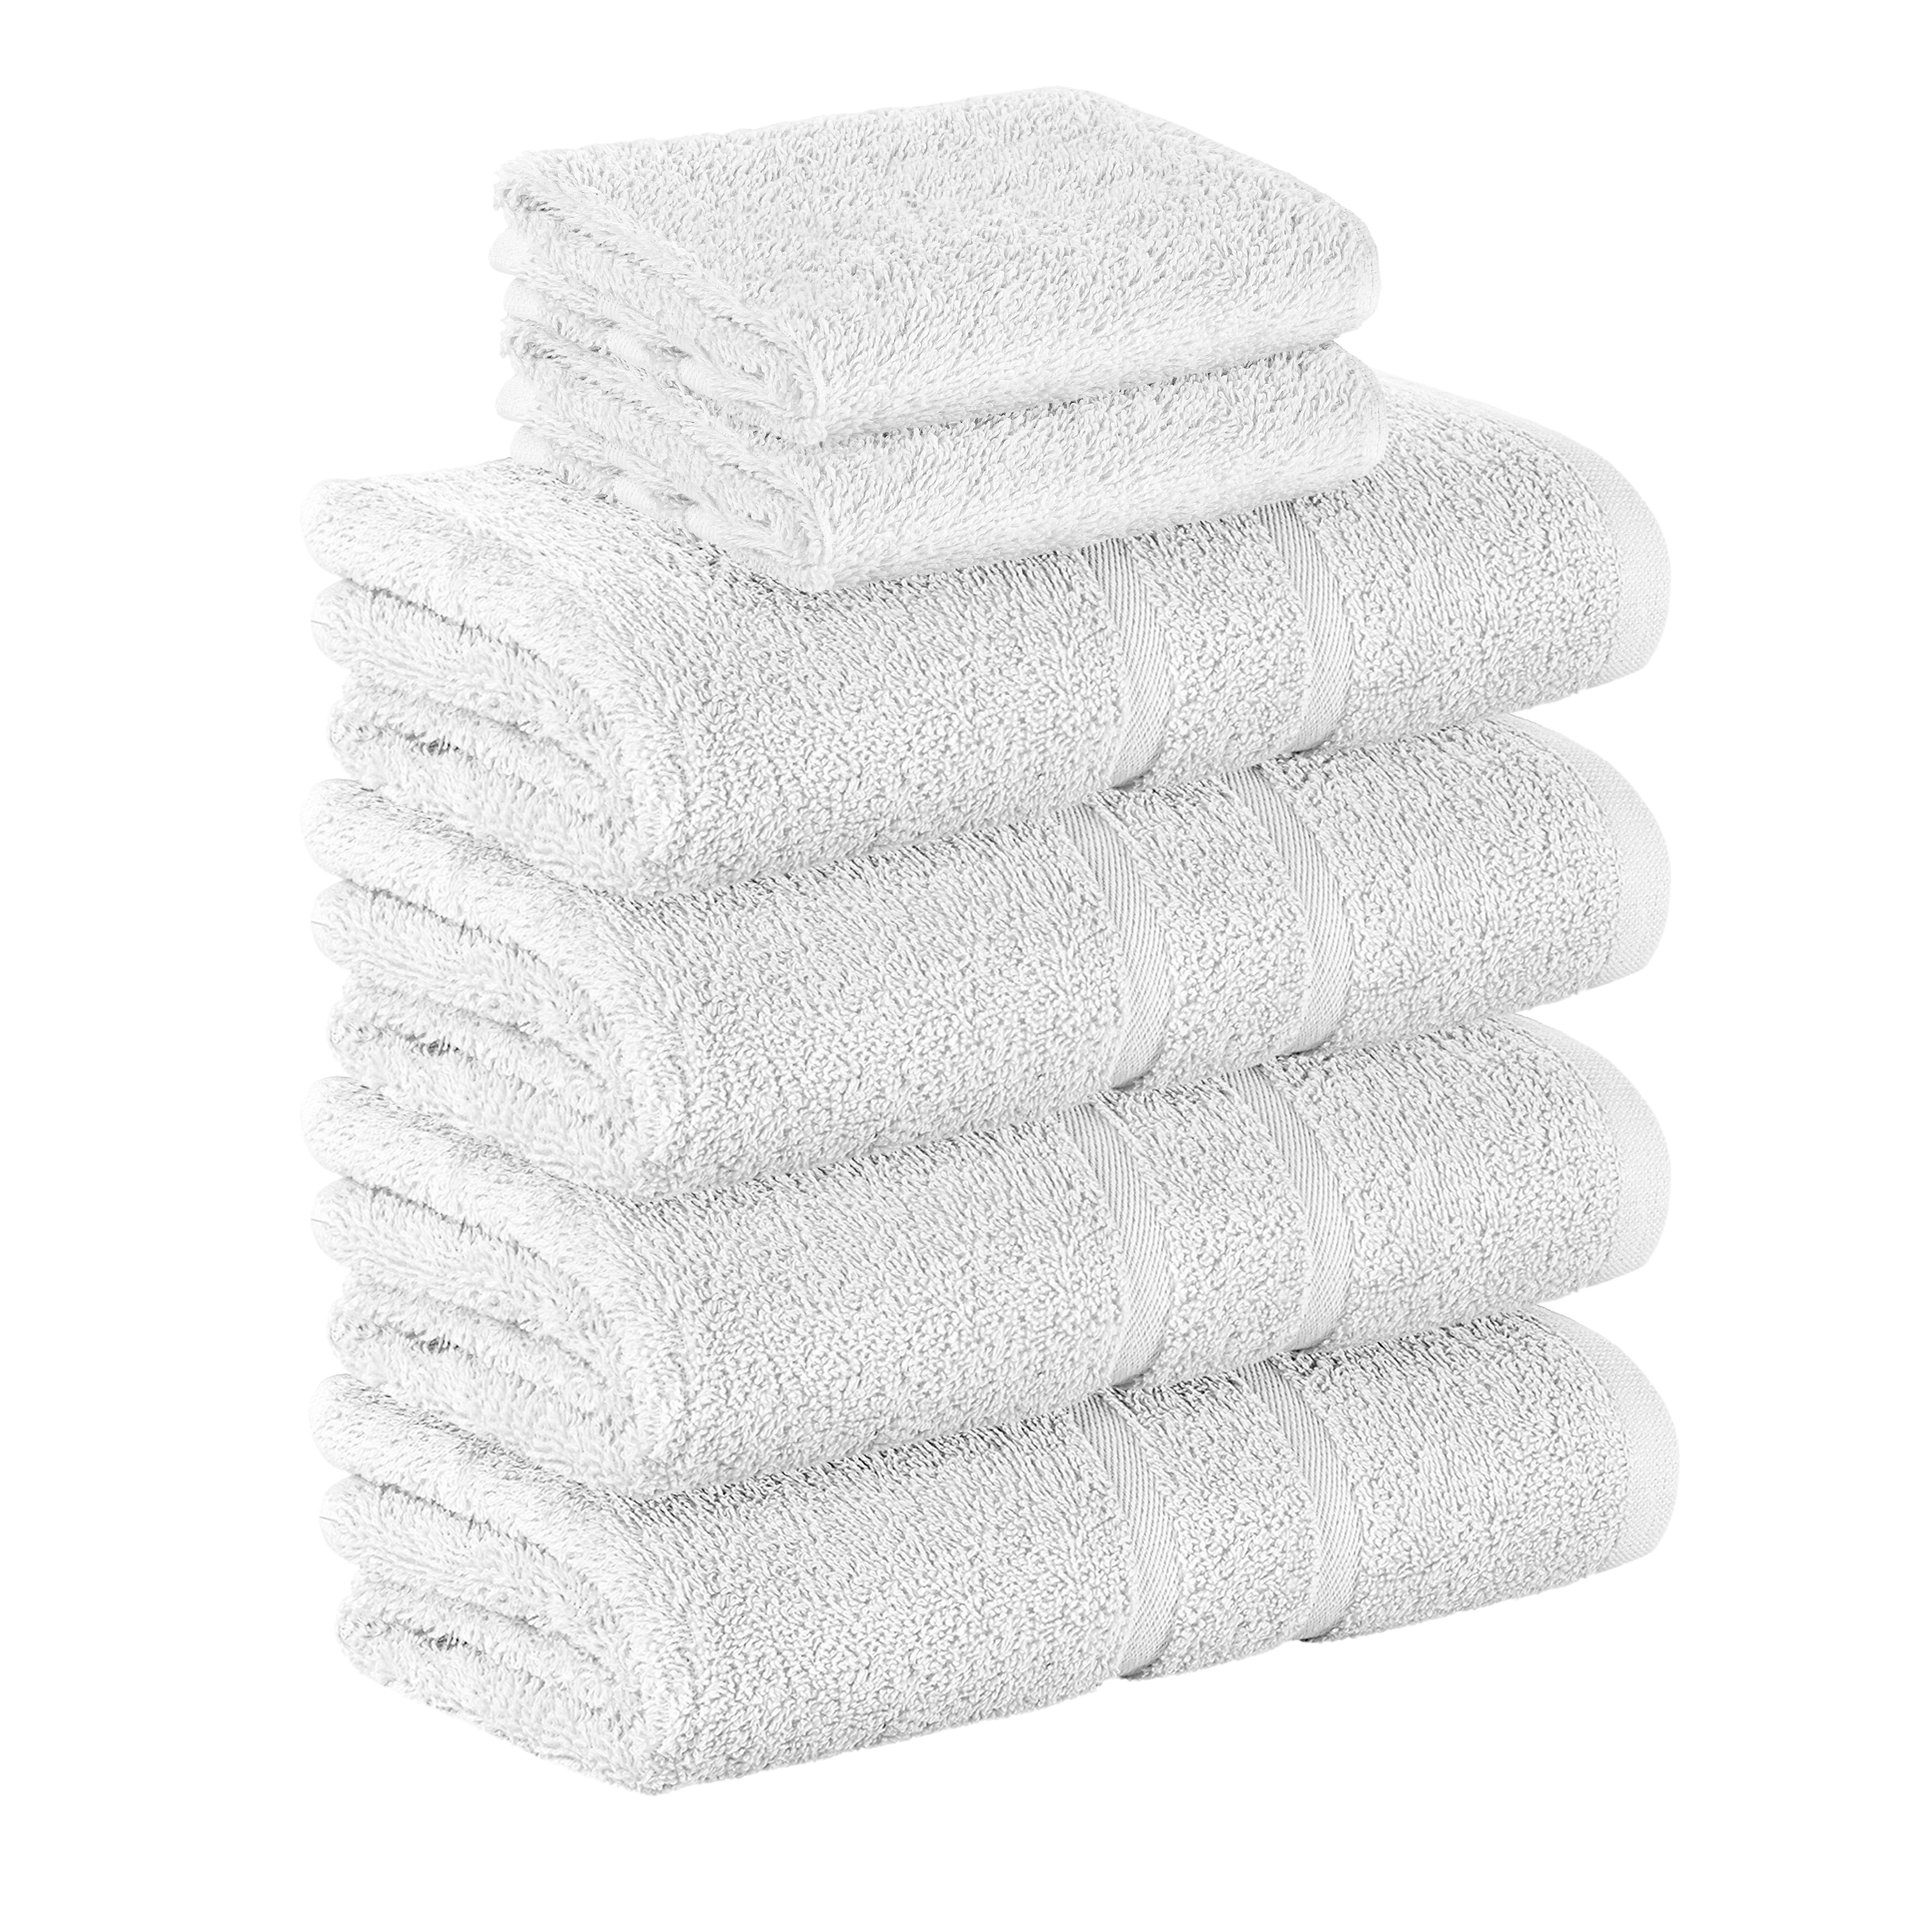 StickandShine Handtuch Set 2x Gästehandtuch 4x Handtücher als SET in verschiedenen Farben (6 Teilig) 100% Baumwolle 500 GSM Frottee 6er Handtuch Pack, 100% Baumwolle 500 GSM Weiß